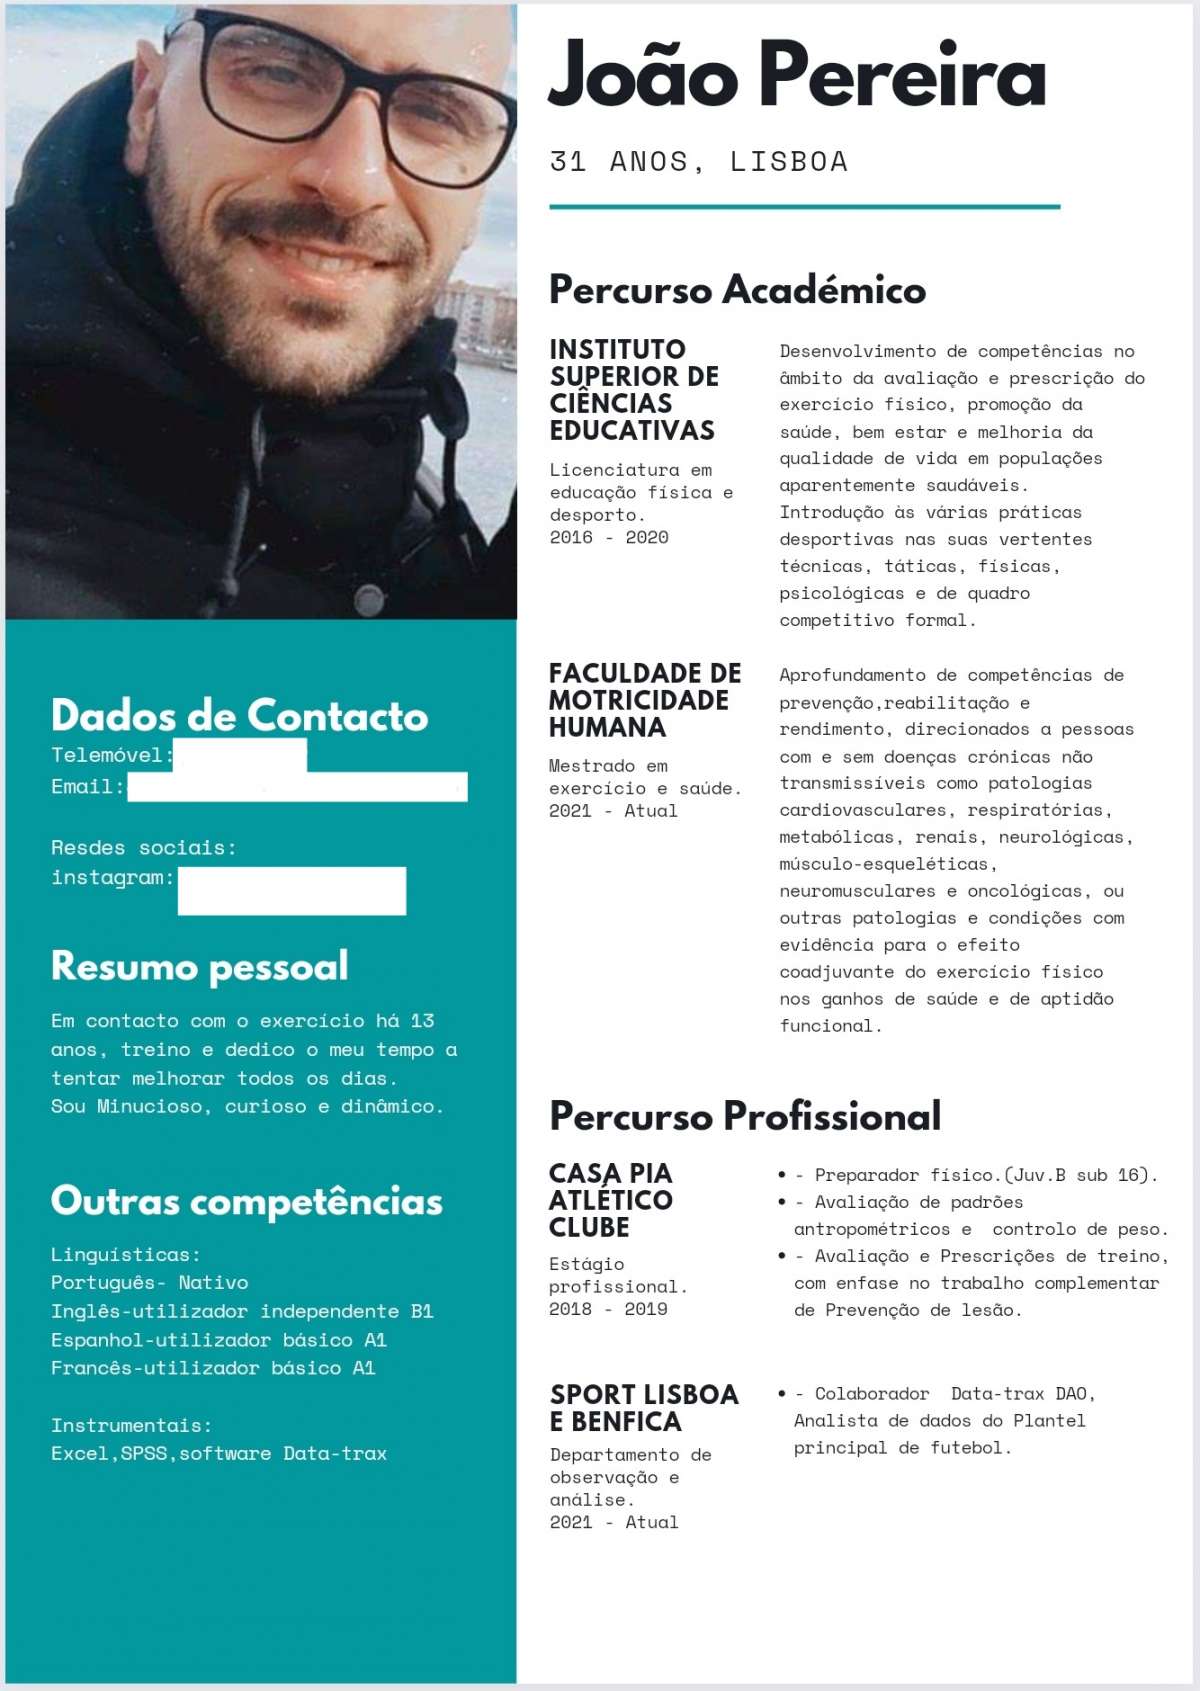 João Pereira - Lisboa - Personal Training e Fitness